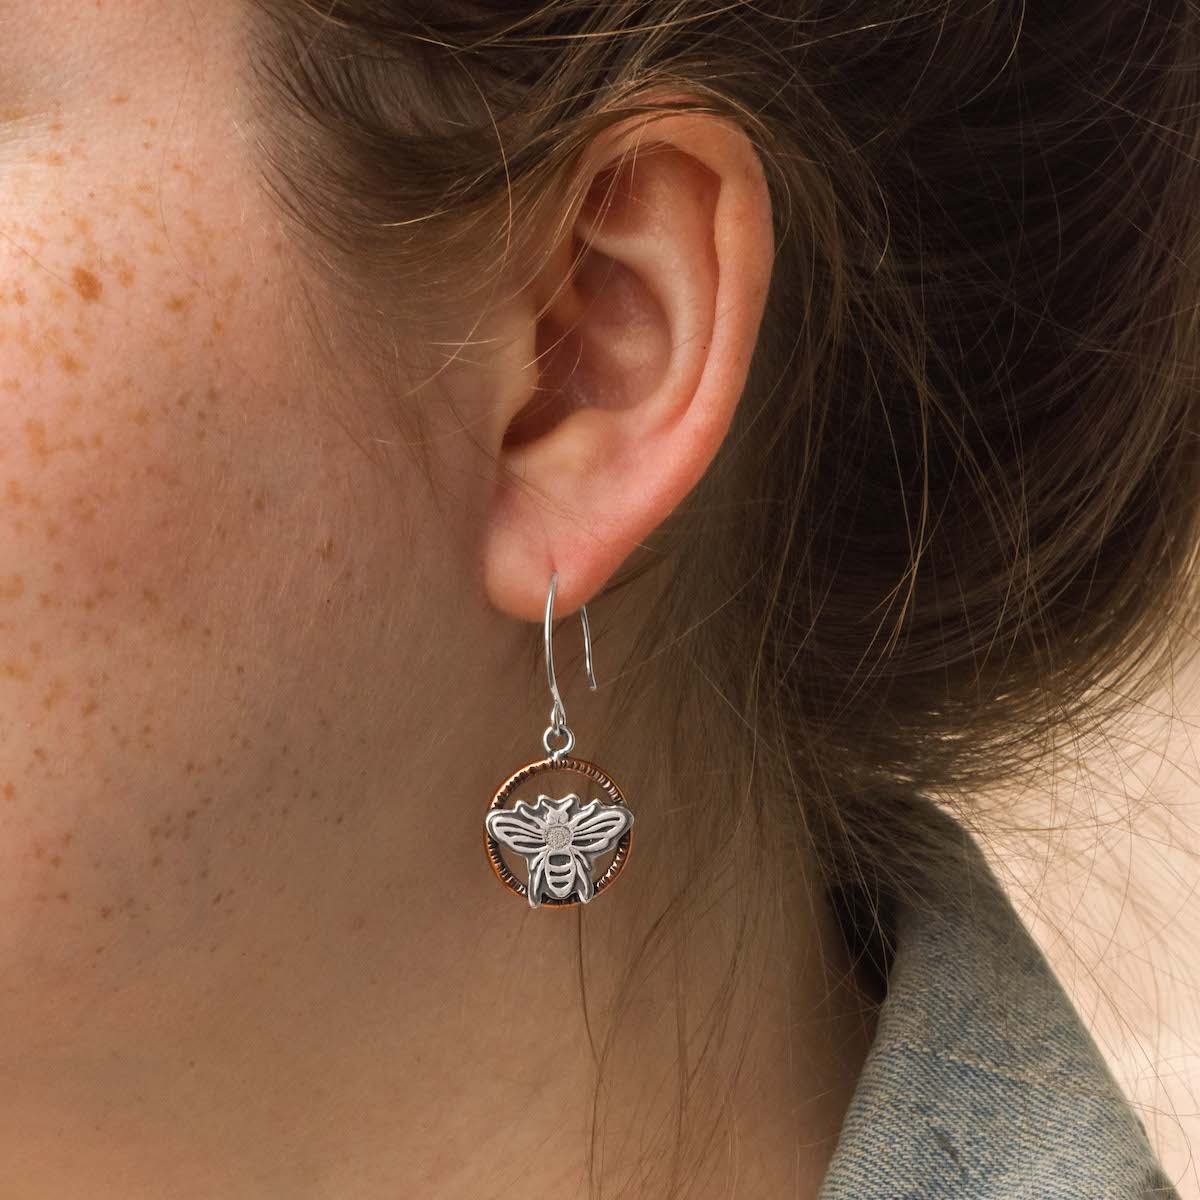 Honey Bee Earrings - Mixed Metal Earrings   5602 - handmade by Beth Millner Jewelry